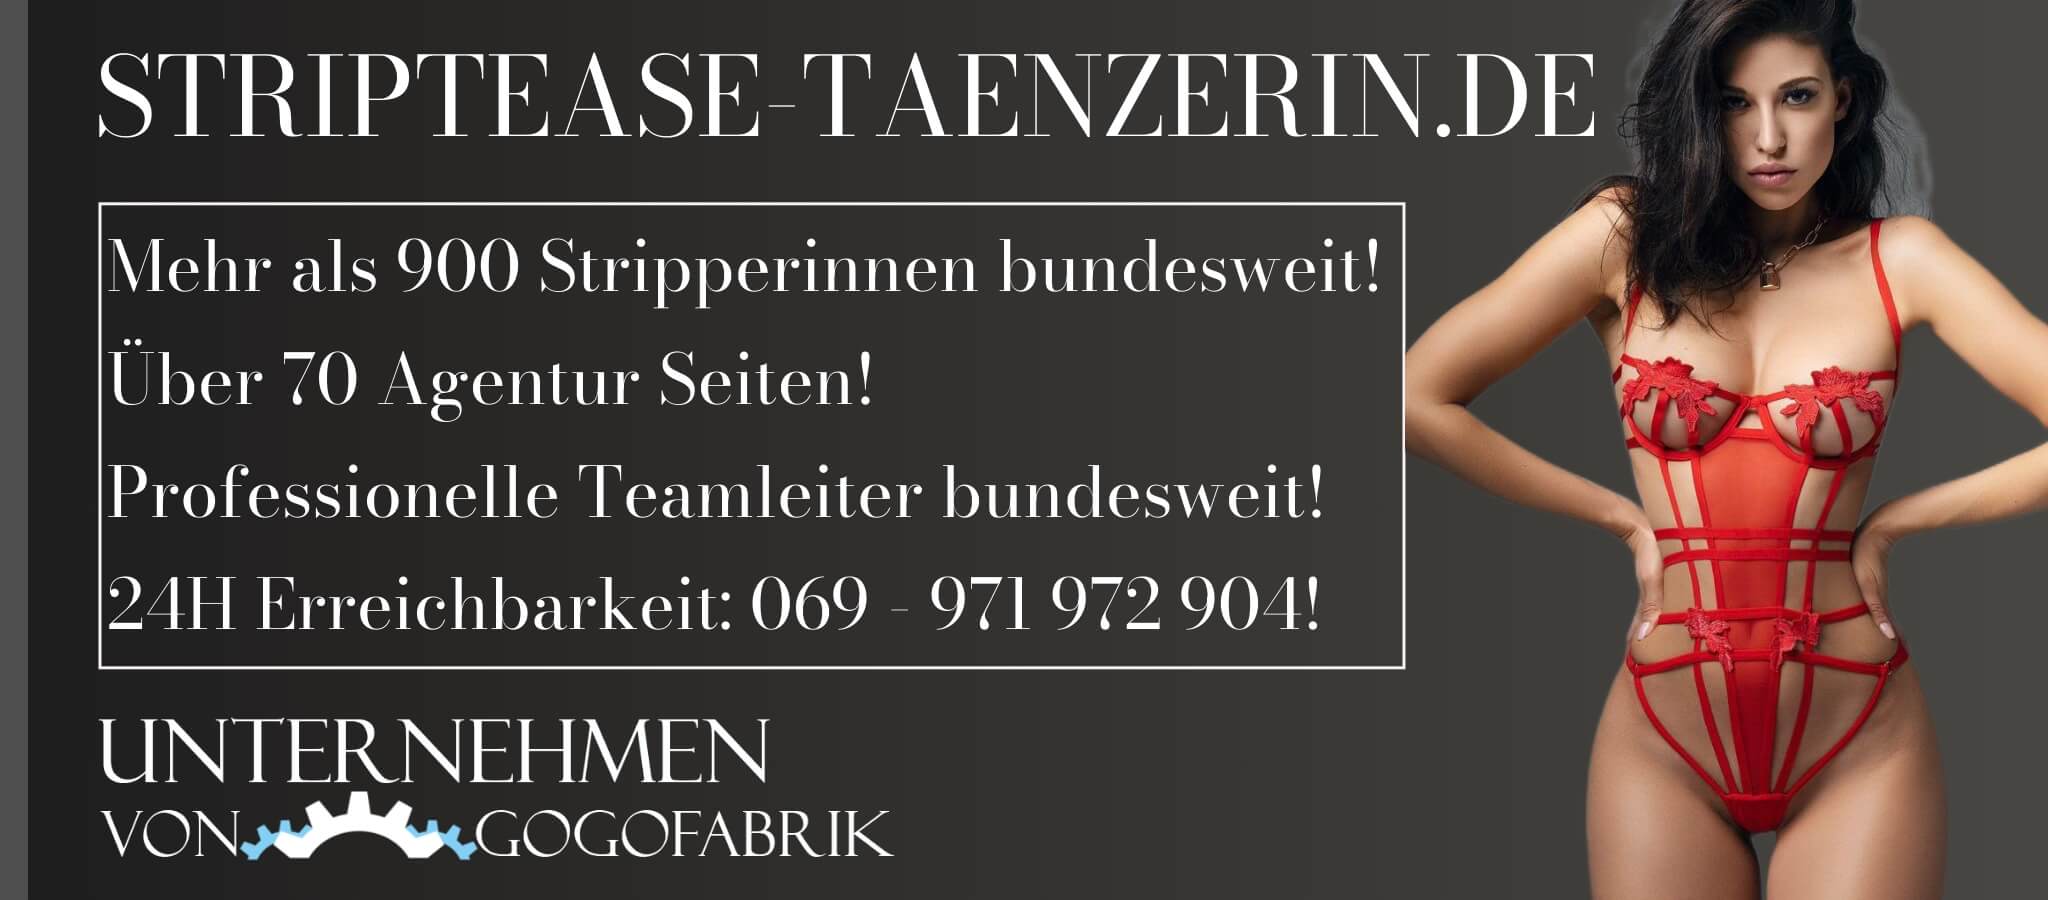 striptease-taenzerin.de